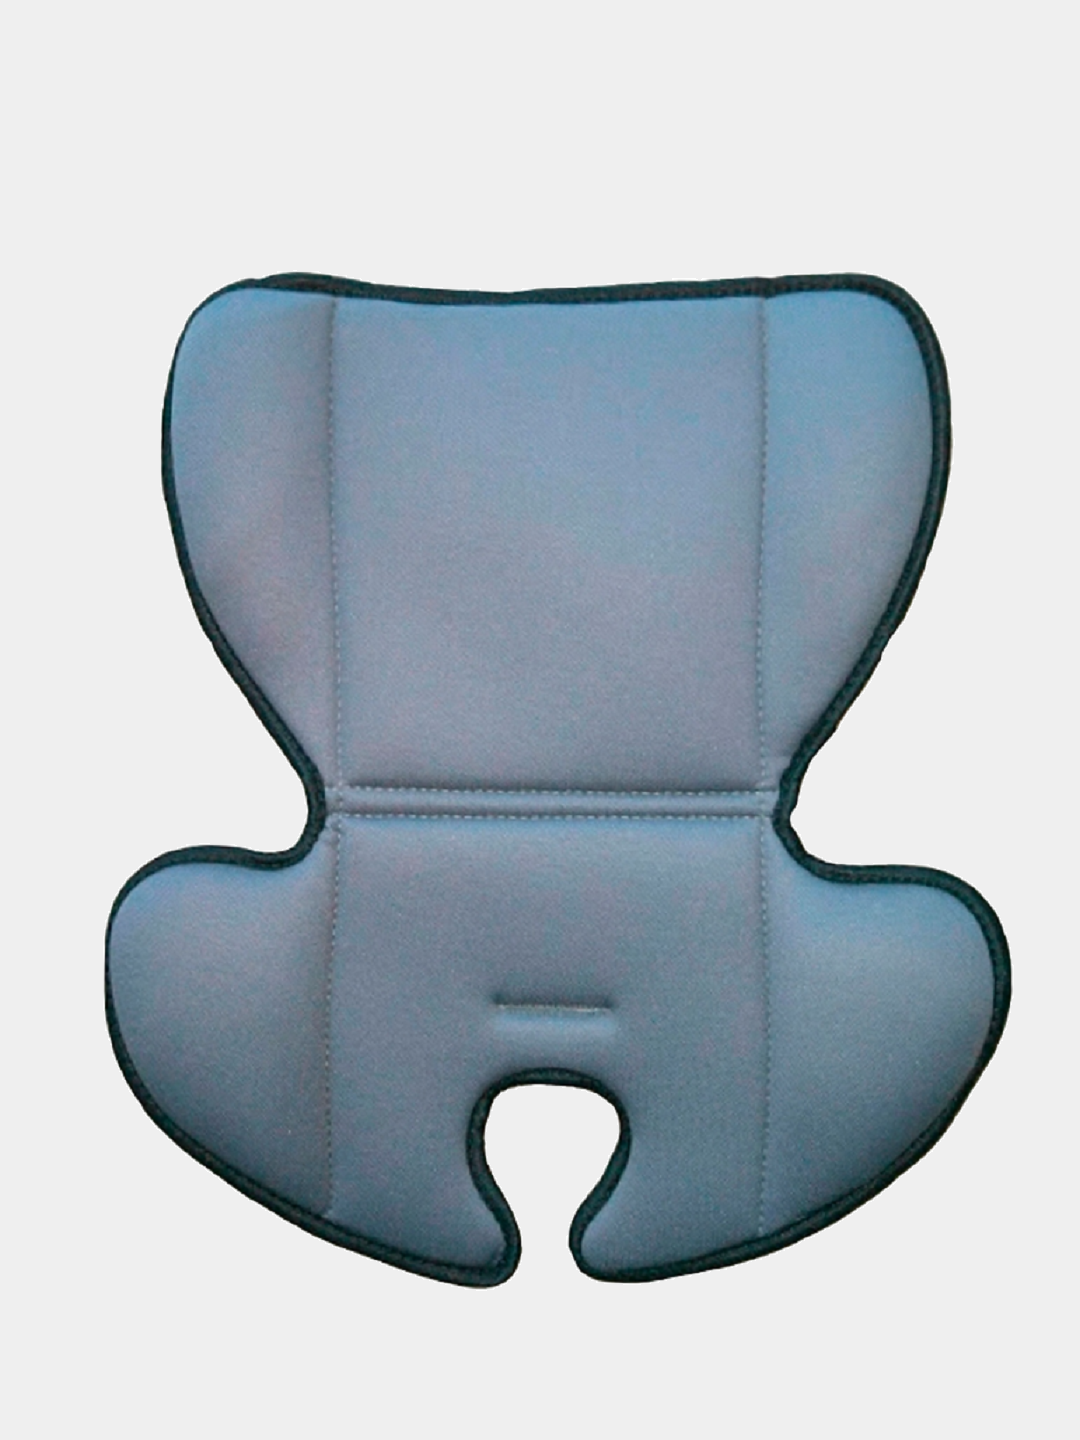 Вкладыш в автокресло. Накидка защитная на спинку сиденья Siger safe-1 с карманами Azard orgs0201. Вкладыш для детского автокресла. Подкладка для автокресла. Мягкий вкладыш в автокресло.